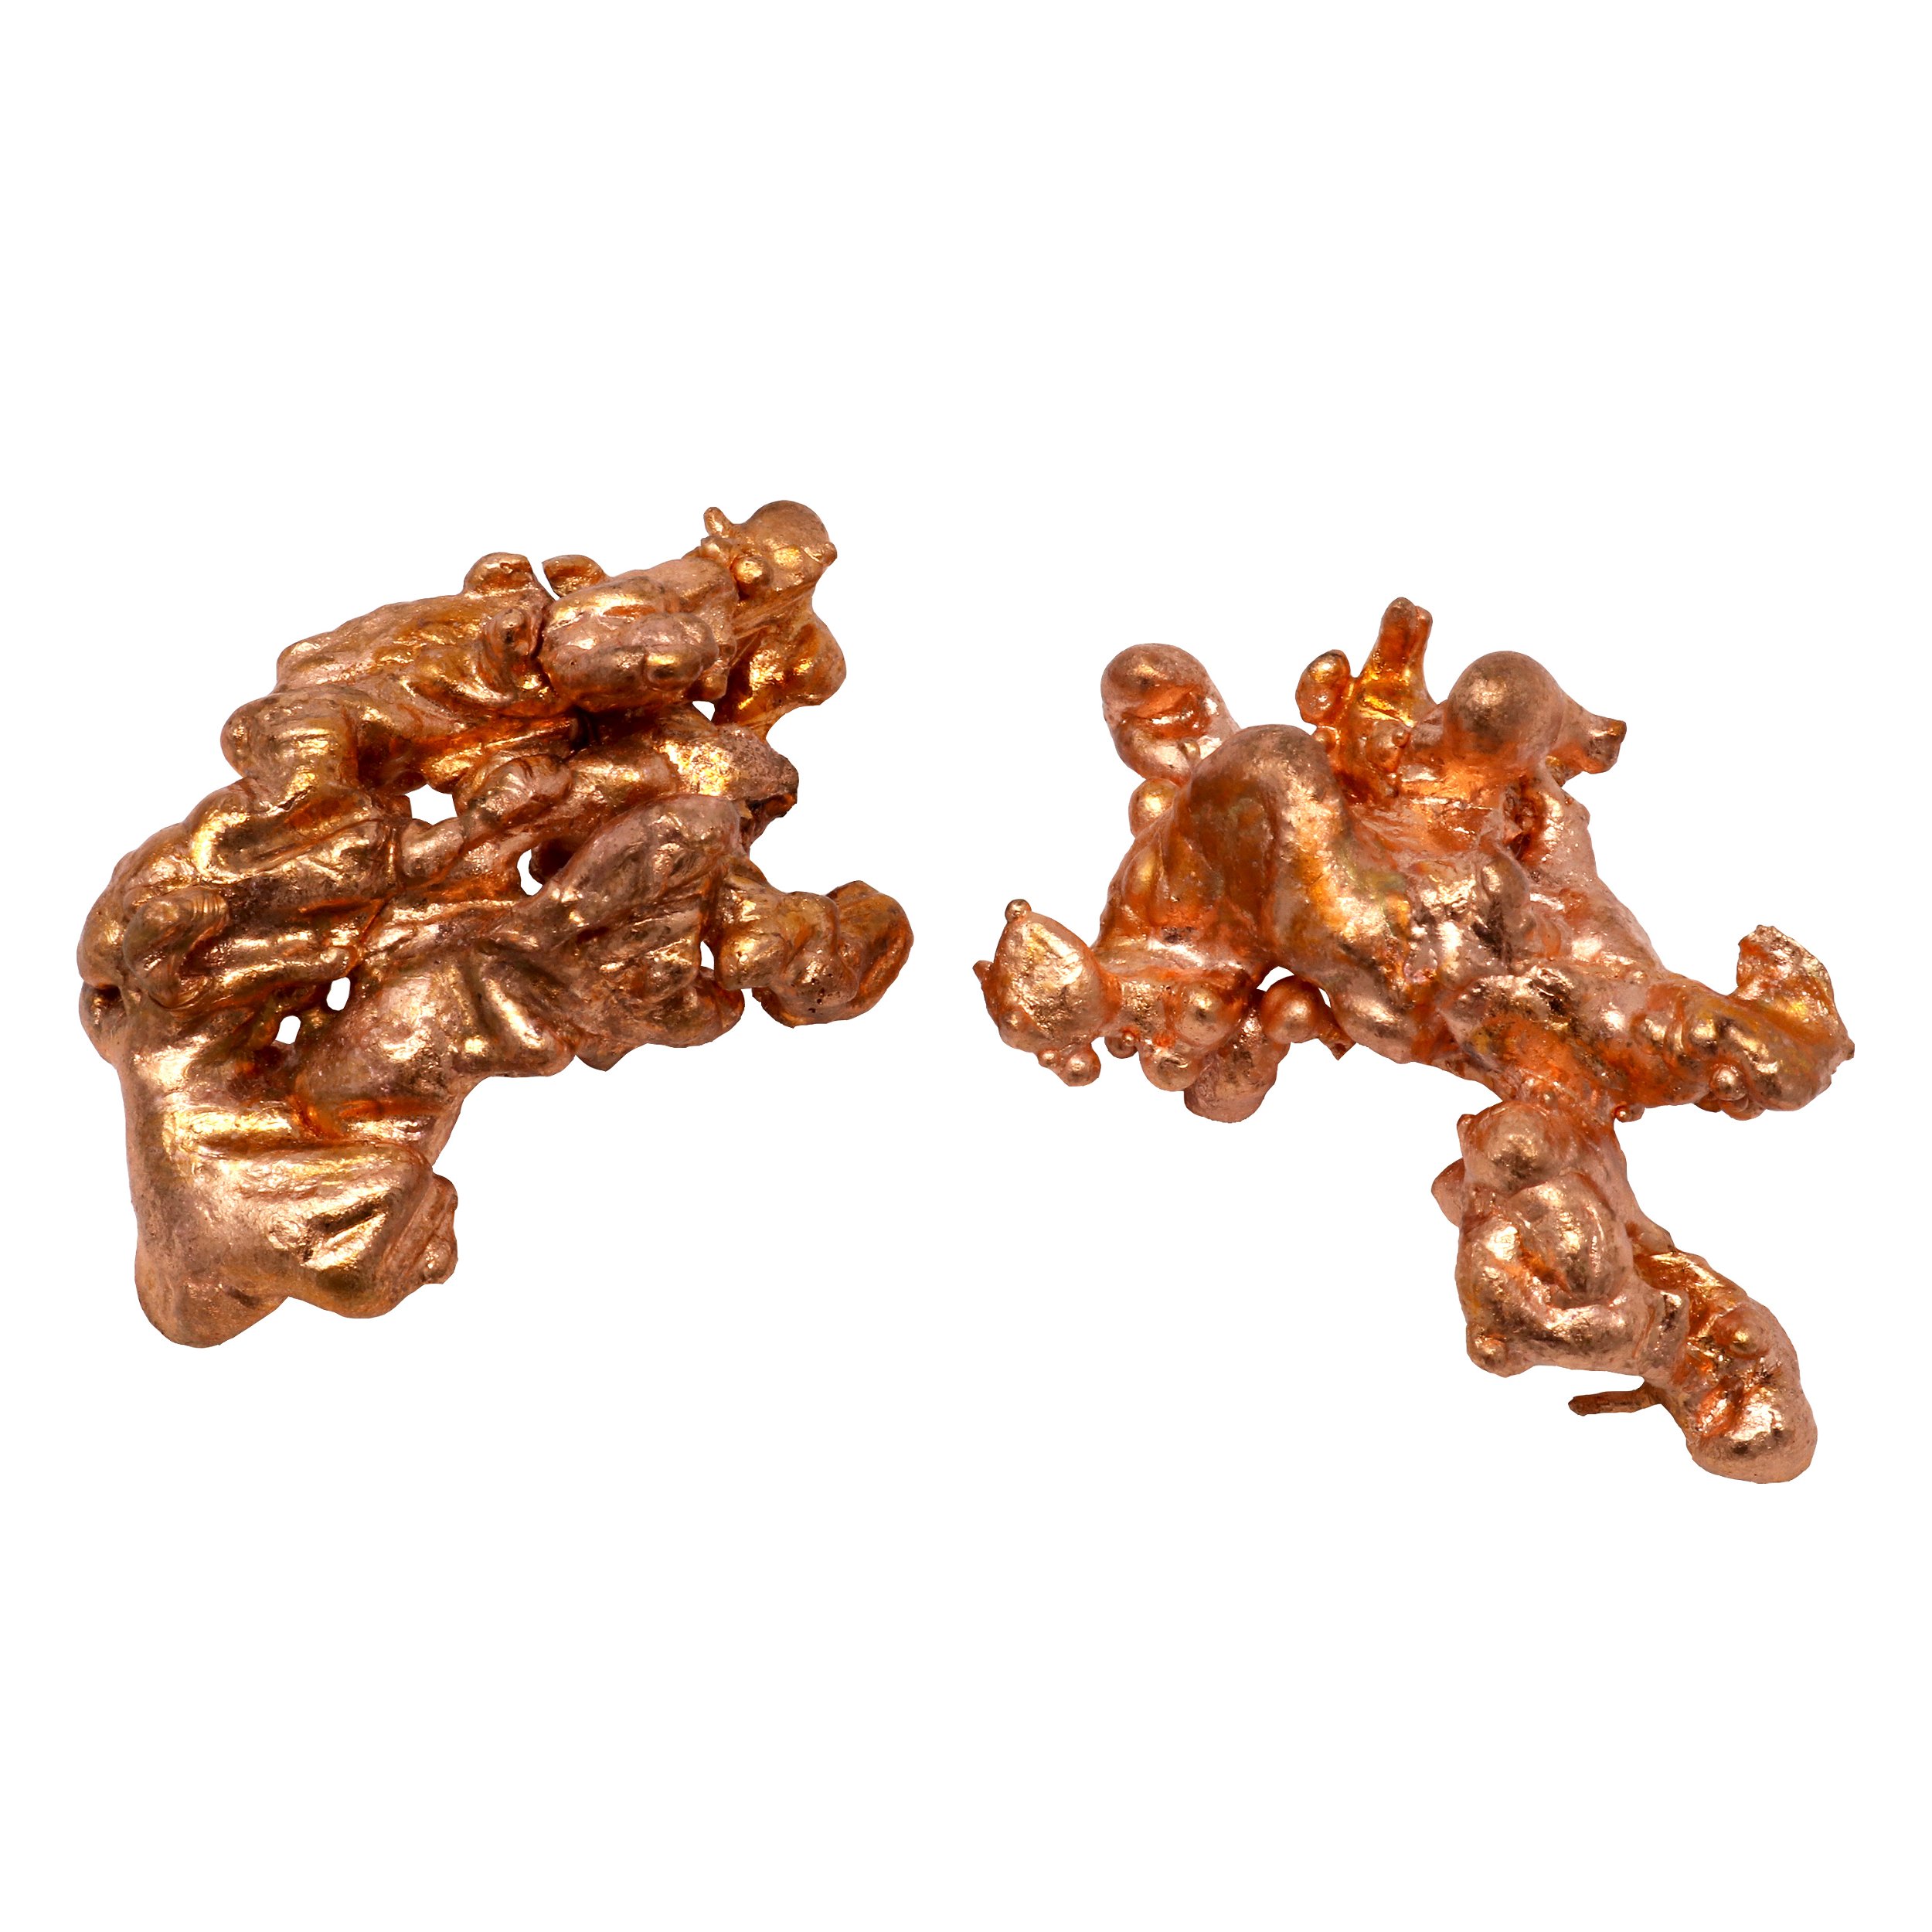 Michigan Sculptured Copper Specimen - Medium (Singles)